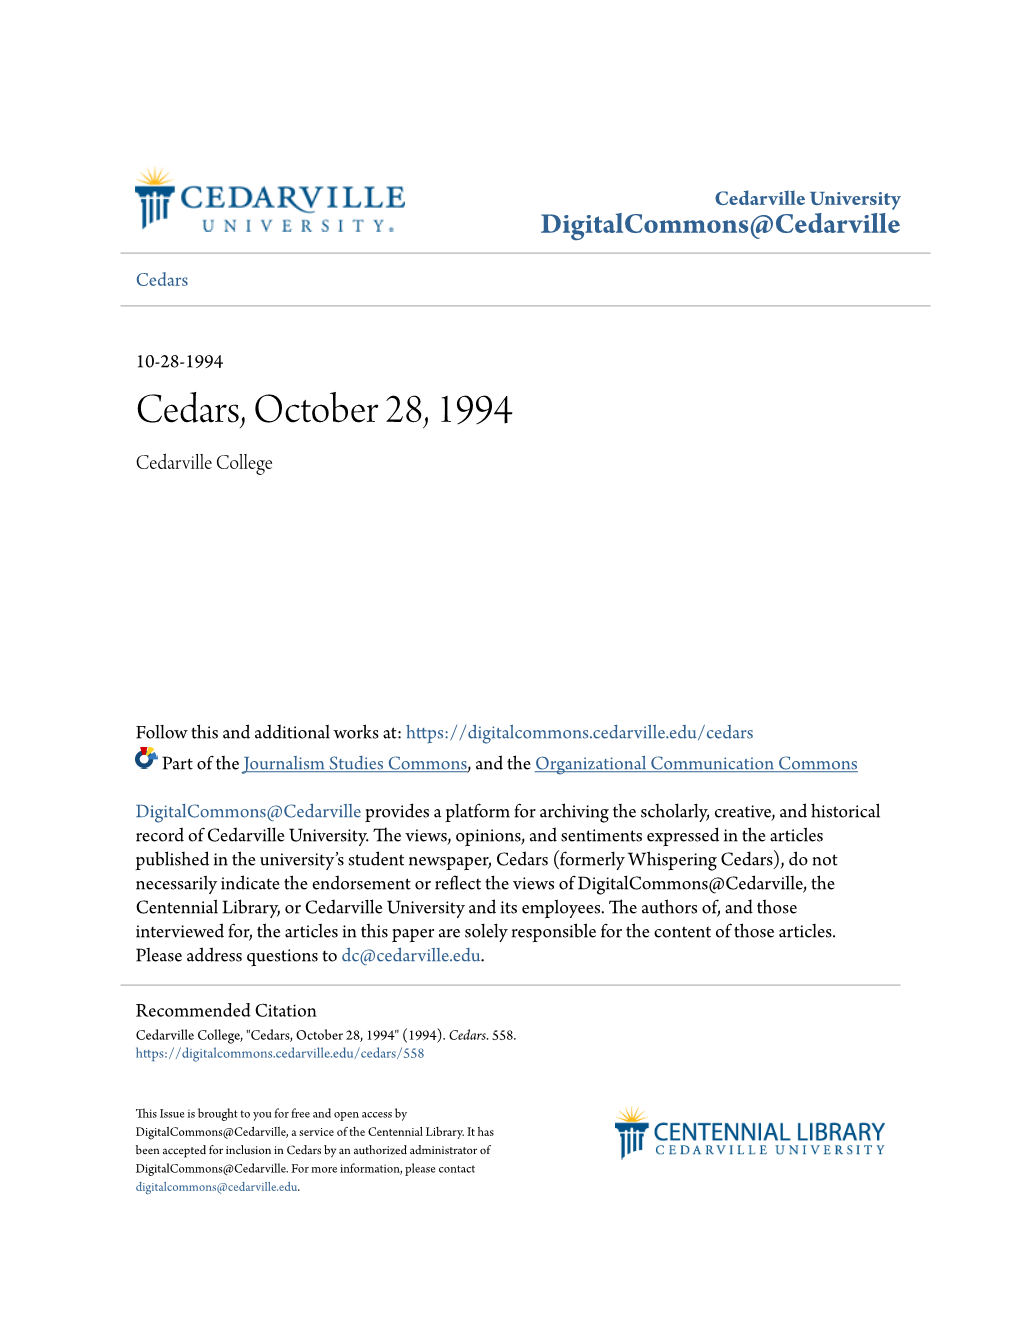 Cedars, October 28, 1994 Cedarville College